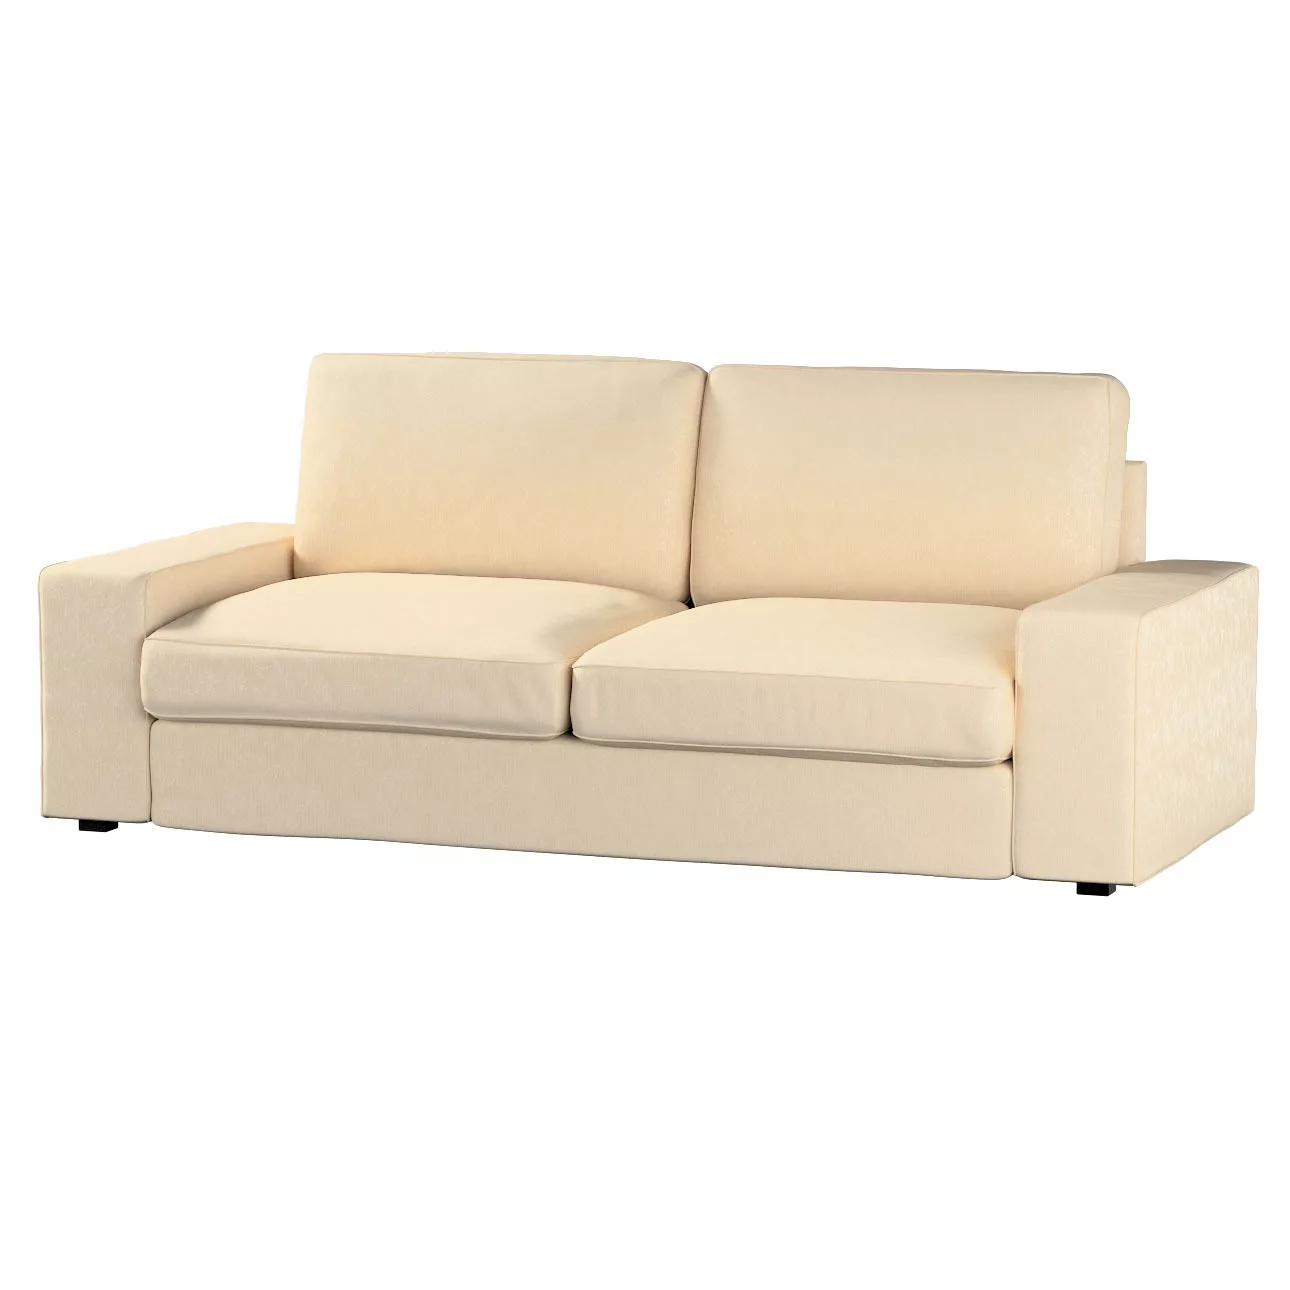 Bezug für Kivik 3-Sitzer Sofa, ecru, Bezug für Sofa Kivik 3-Sitzer, Living günstig online kaufen